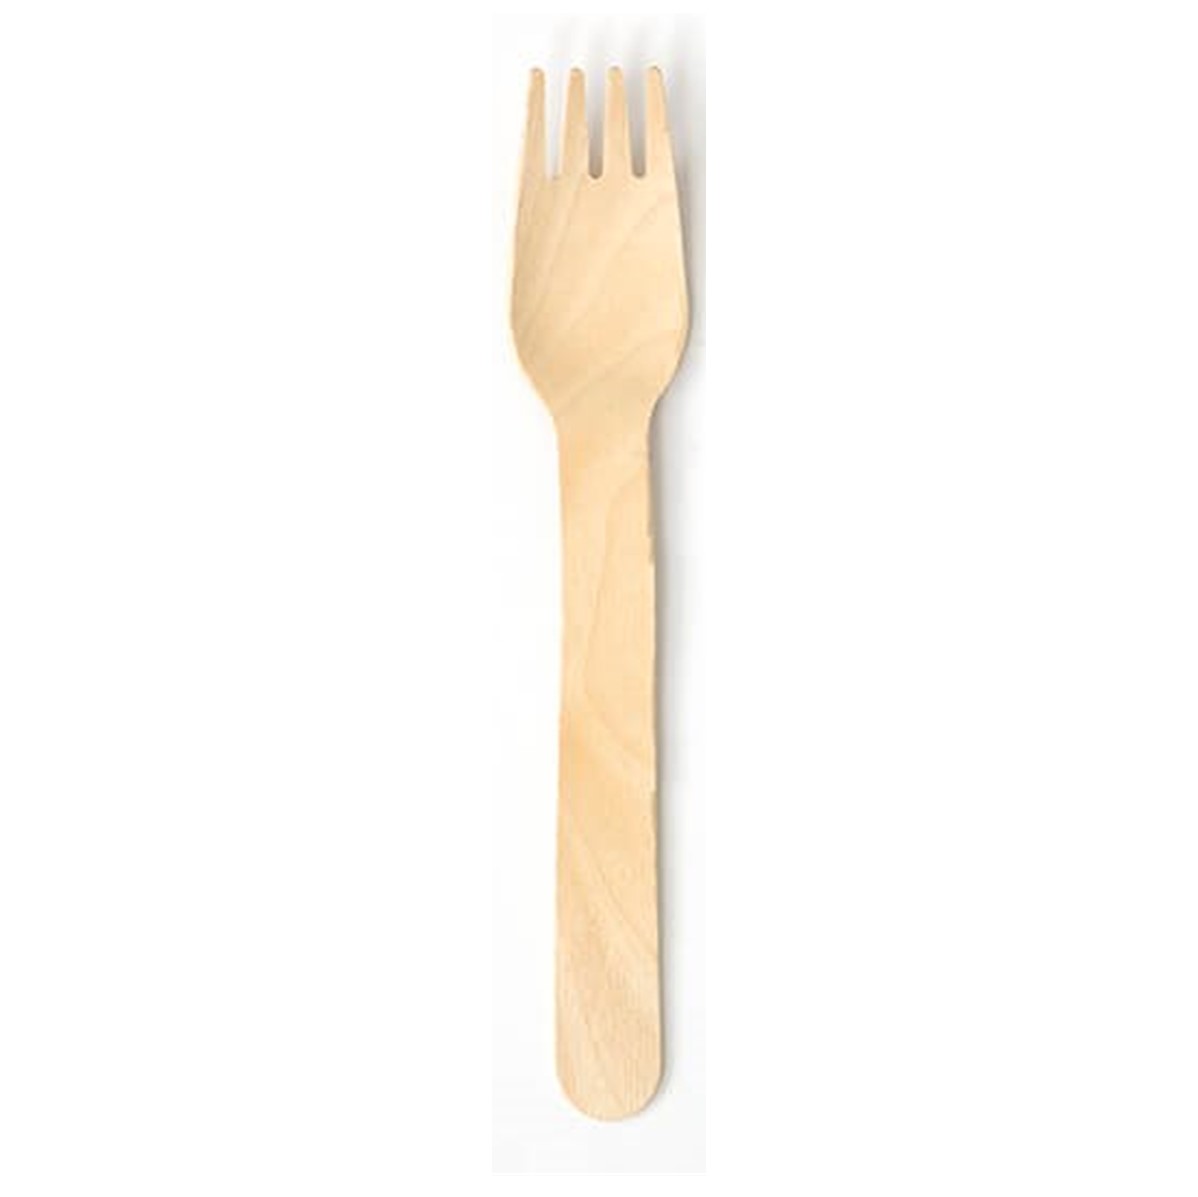 Edenware Wooden Forks - 100 forks [BIO-D]